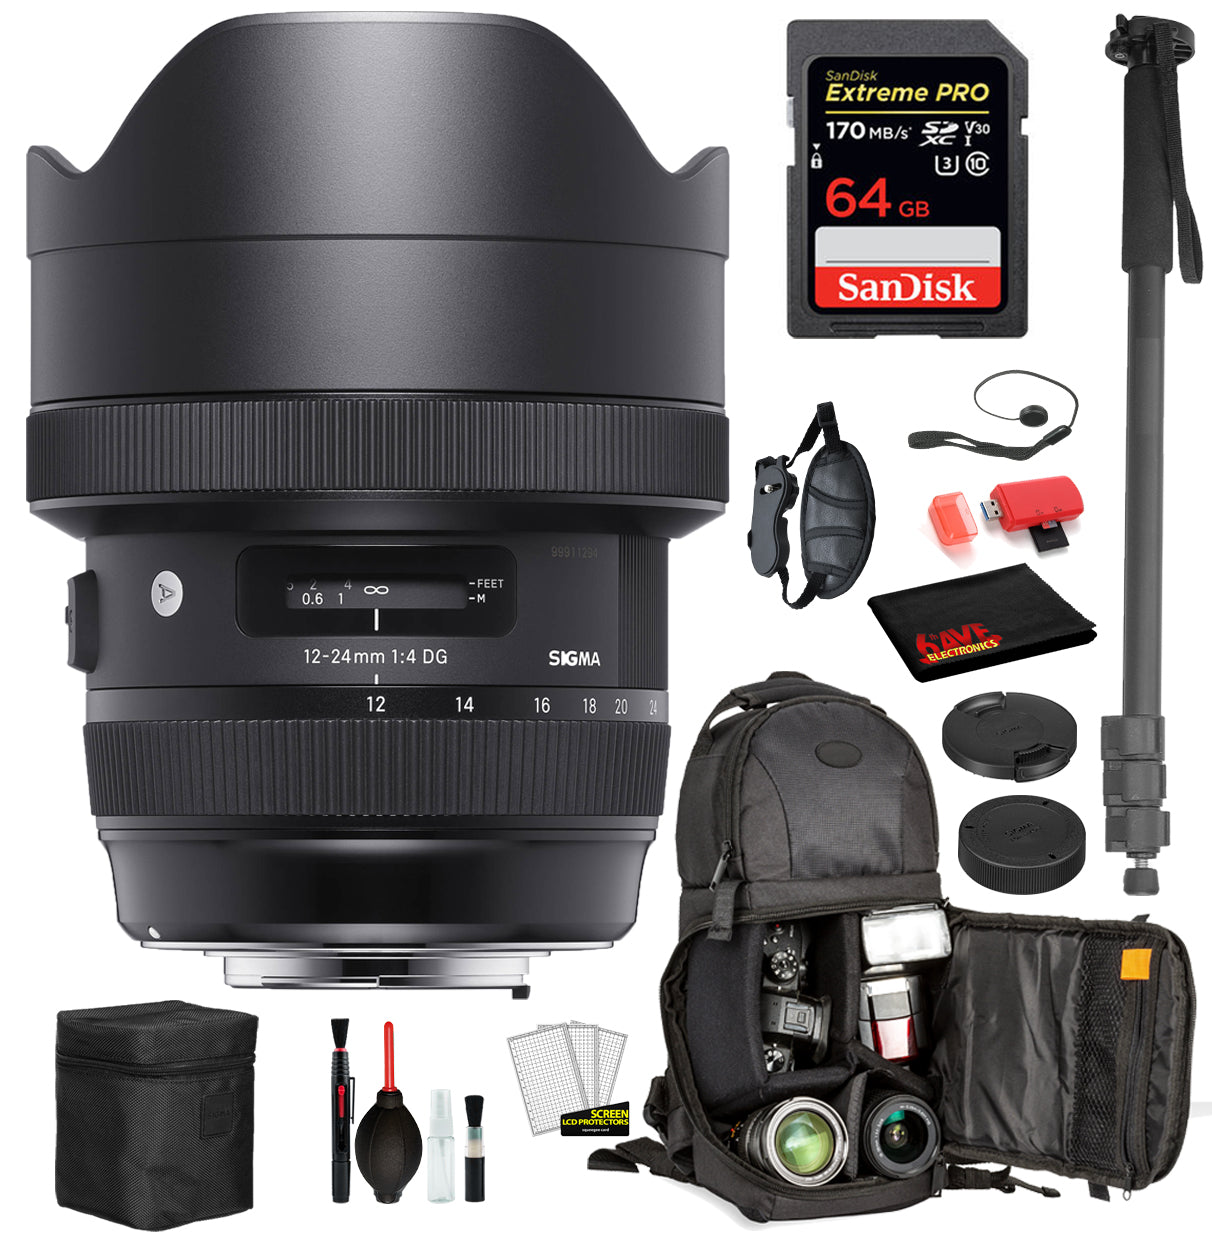 Sigma 12-24mm f/4 DG HSM Art Lens for Nikon F with Bundle: Sandisk extreme Pro 64gb SD Card, Sling Backpack + More